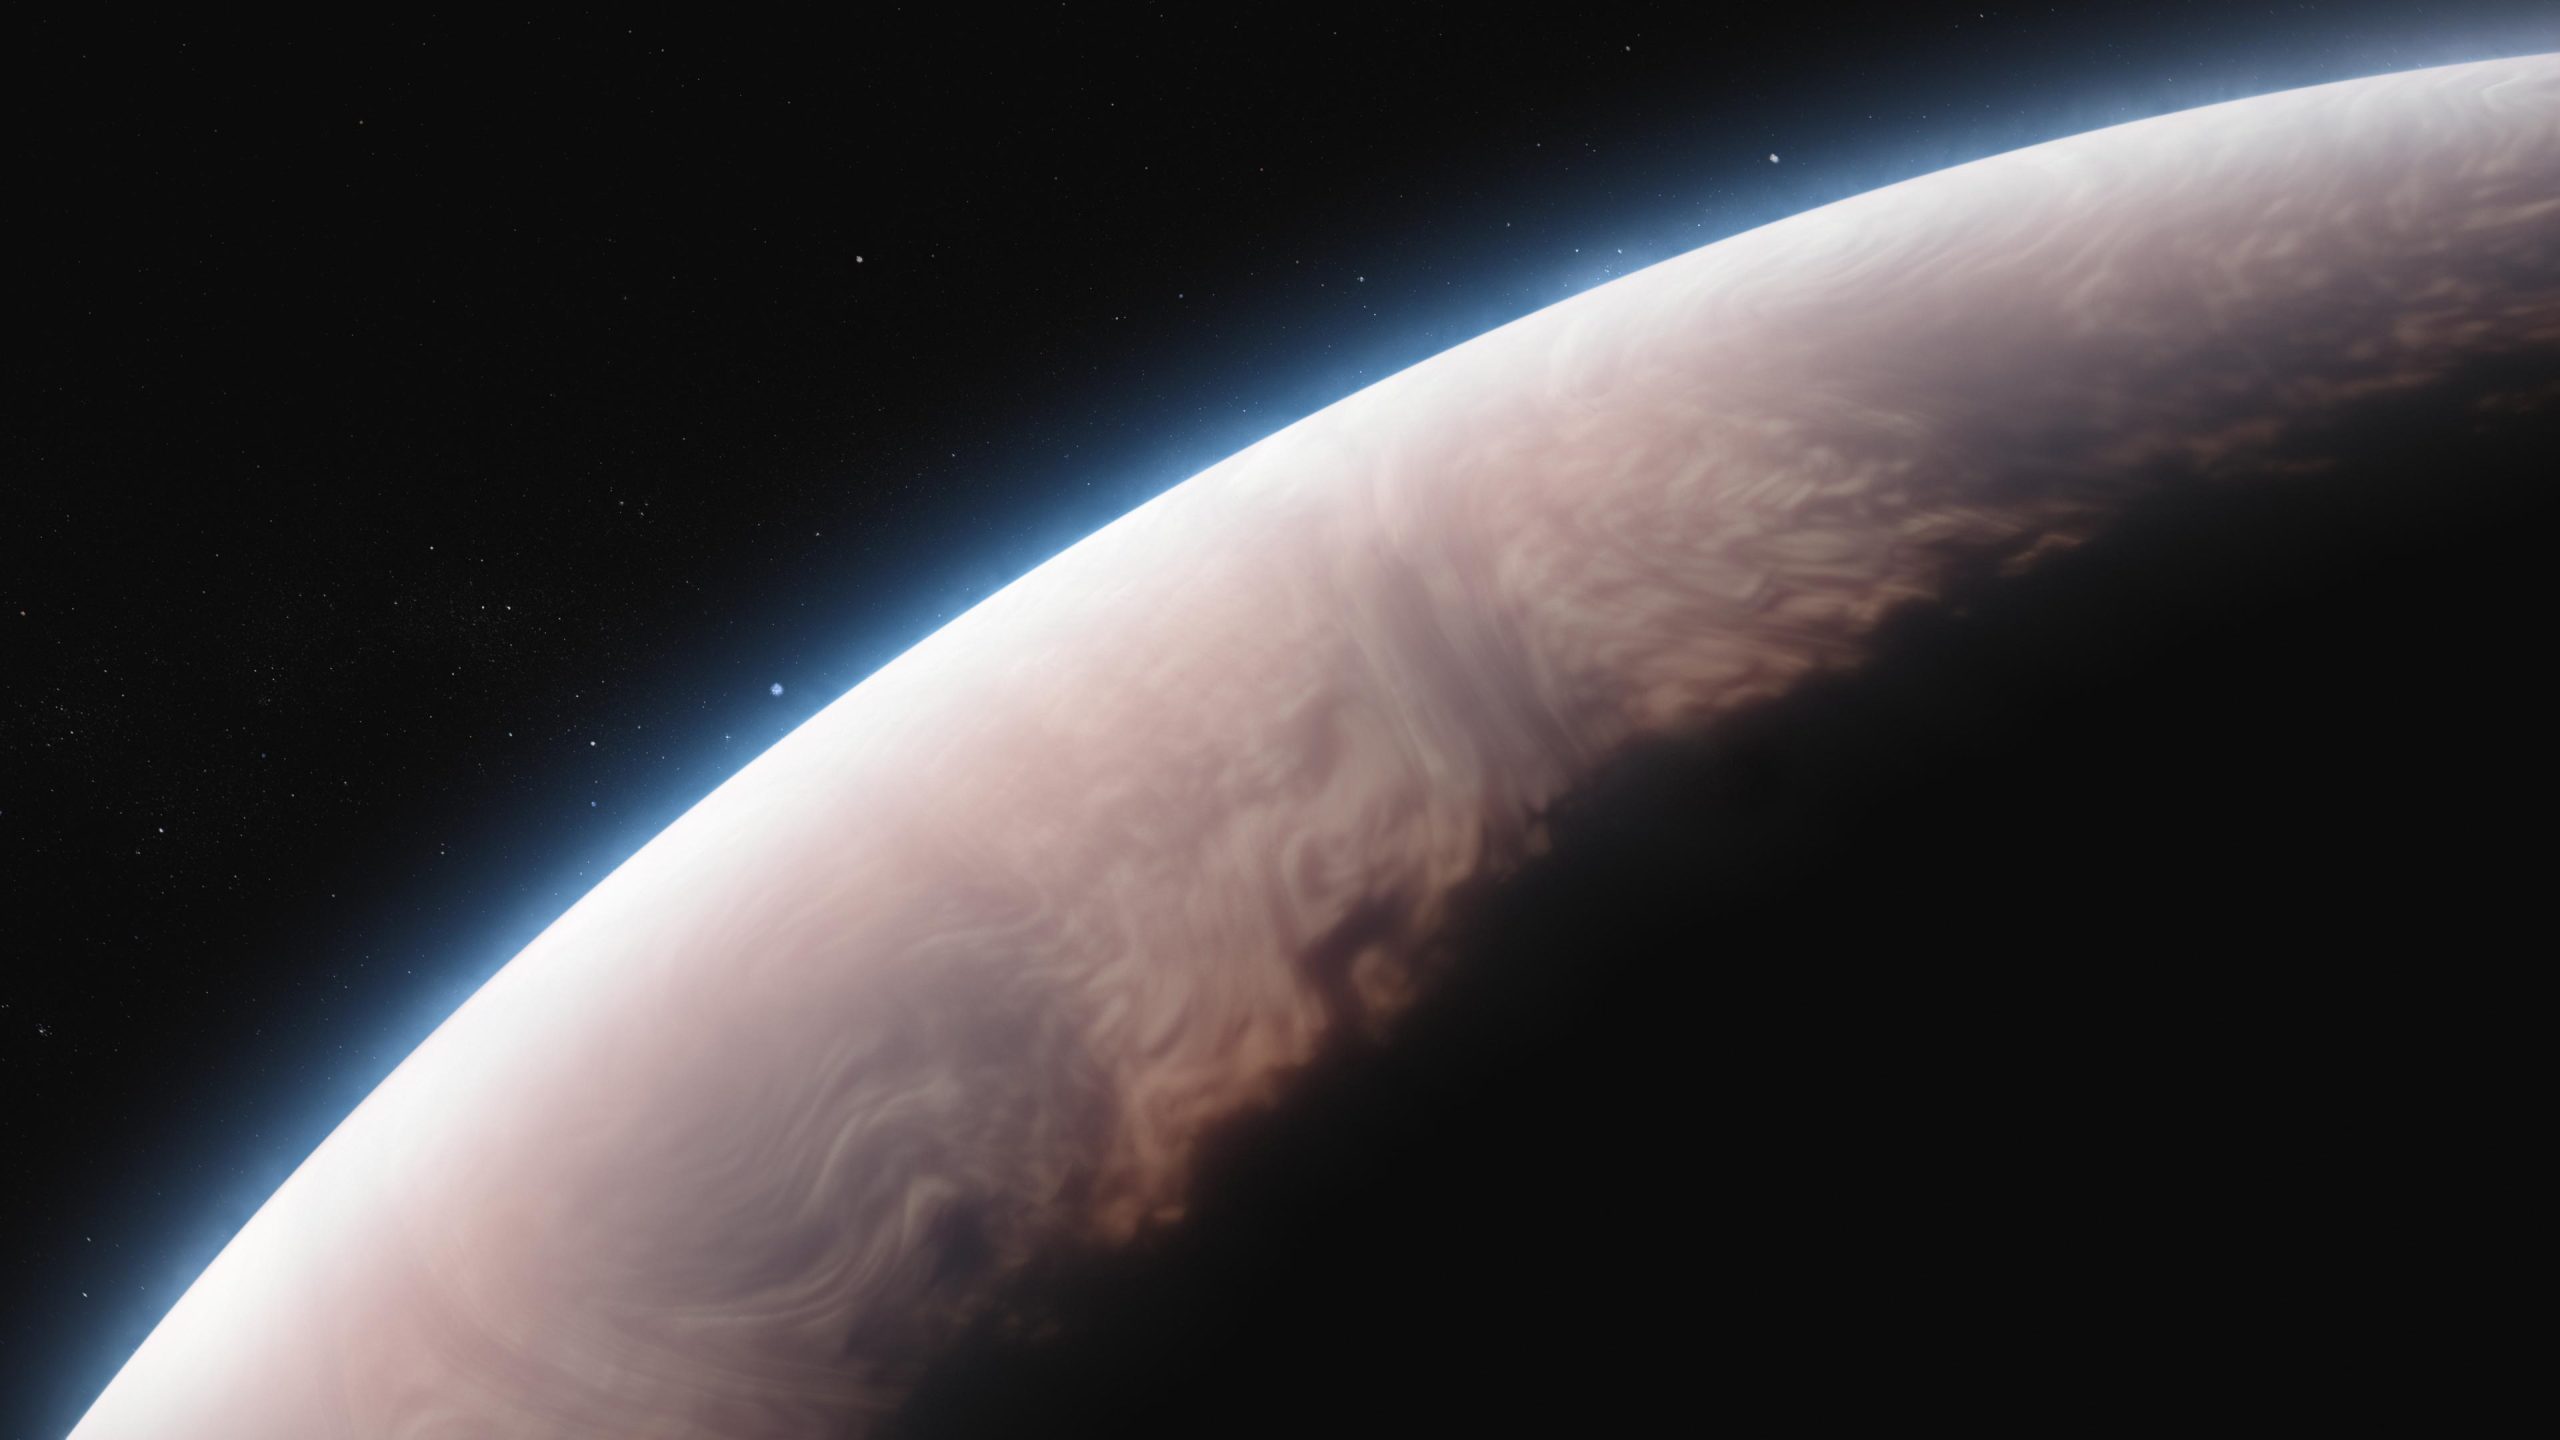 Kiezelzuurijs omhult de vurige atmosfeer van de hete exoplaneet Jupiter